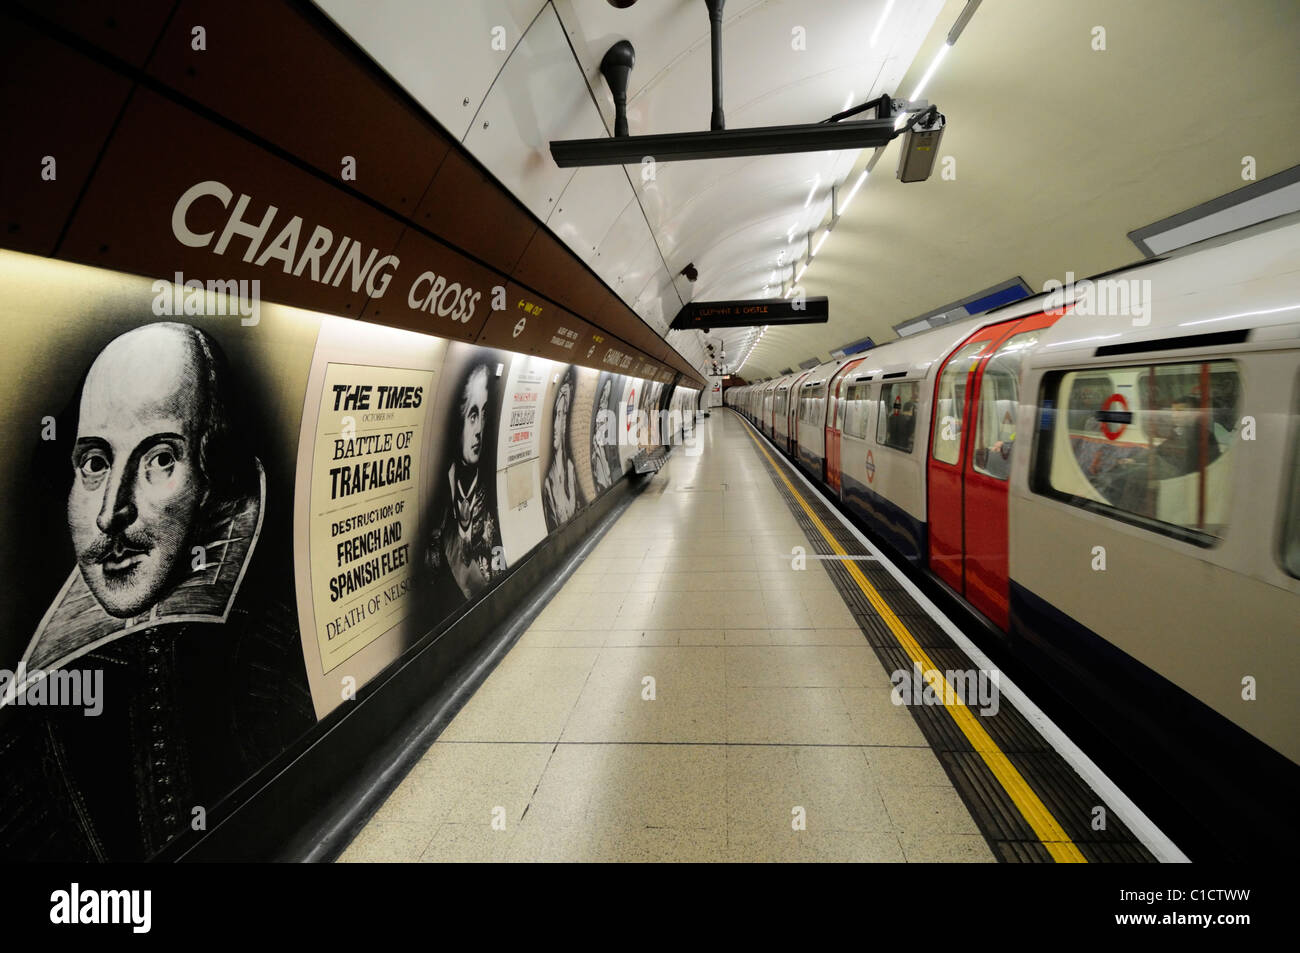 Charing Cross Underground Tube Station Bakerloo line Platform, London, England, UK Stock Photo